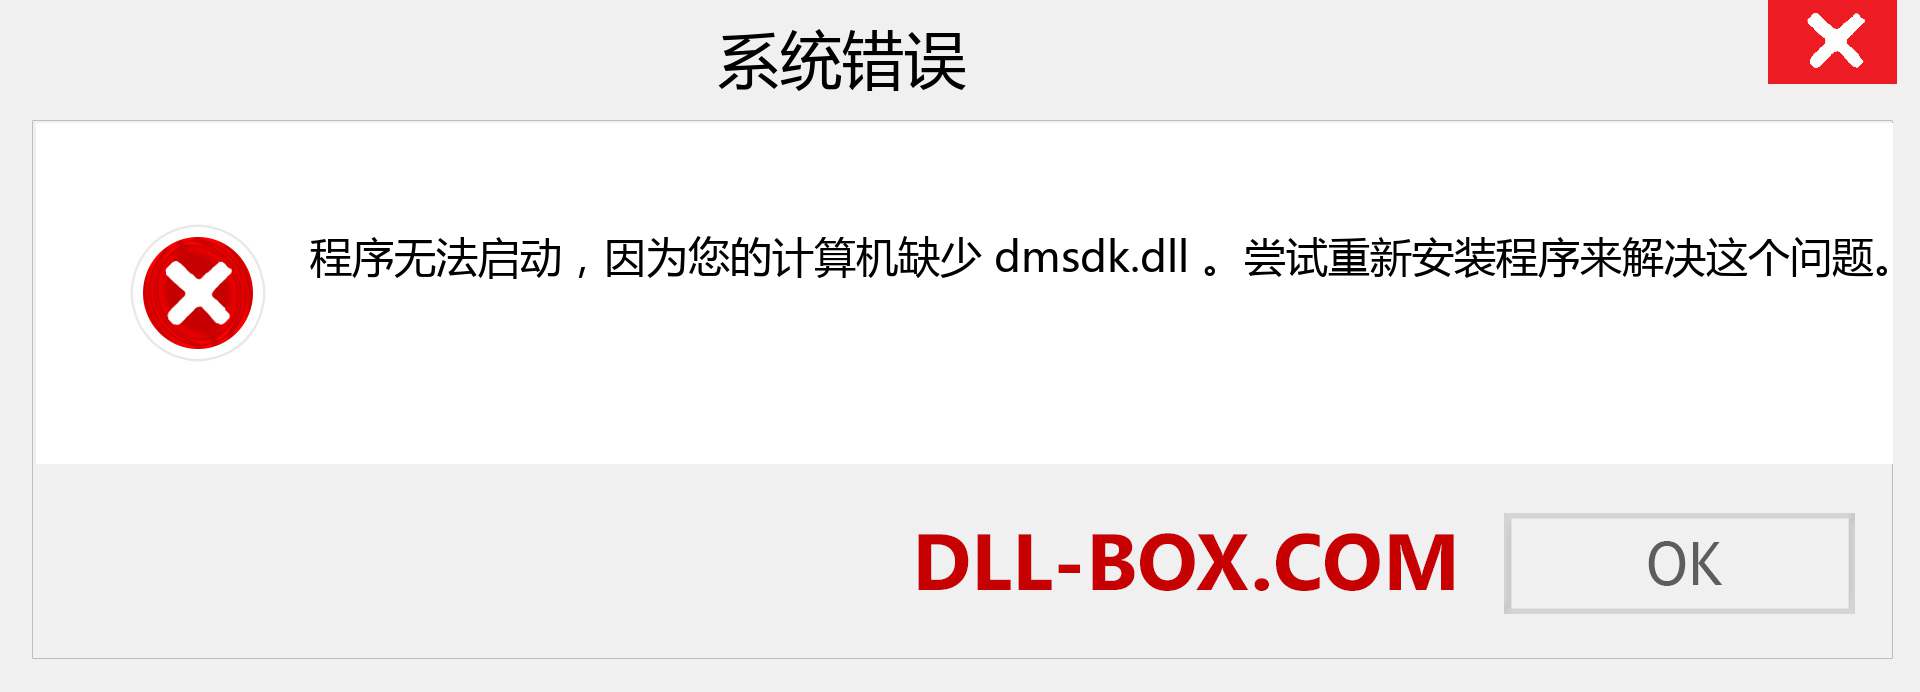 dmsdk.dll 文件丢失？。 适用于 Windows 7、8、10 的下载 - 修复 Windows、照片、图像上的 dmsdk dll 丢失错误